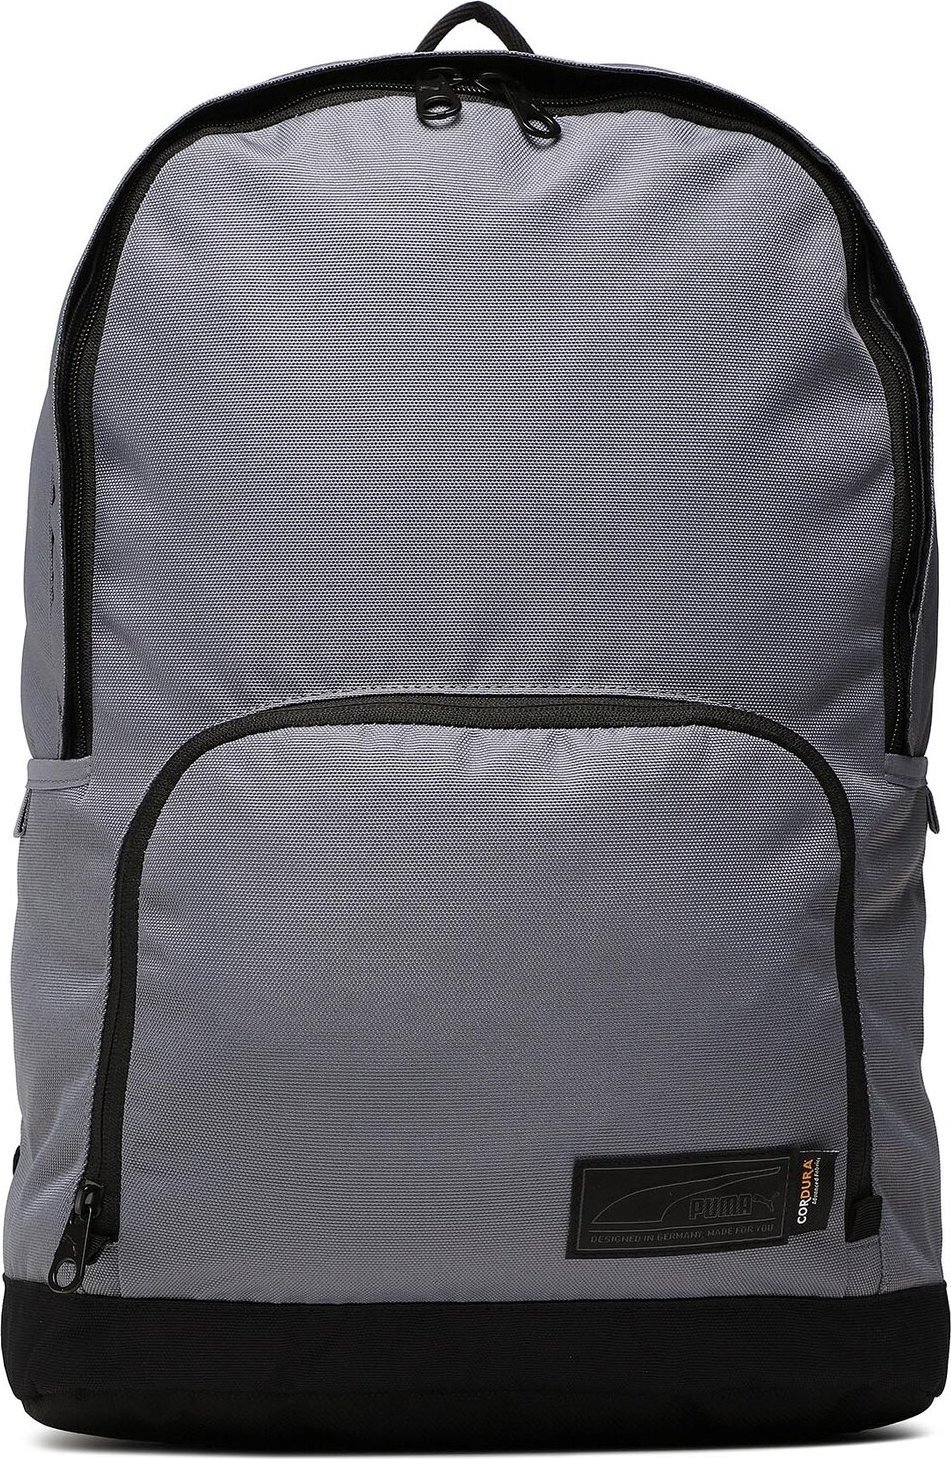 Batoh Puma Axis Backpack 079668 Gray Tile 02